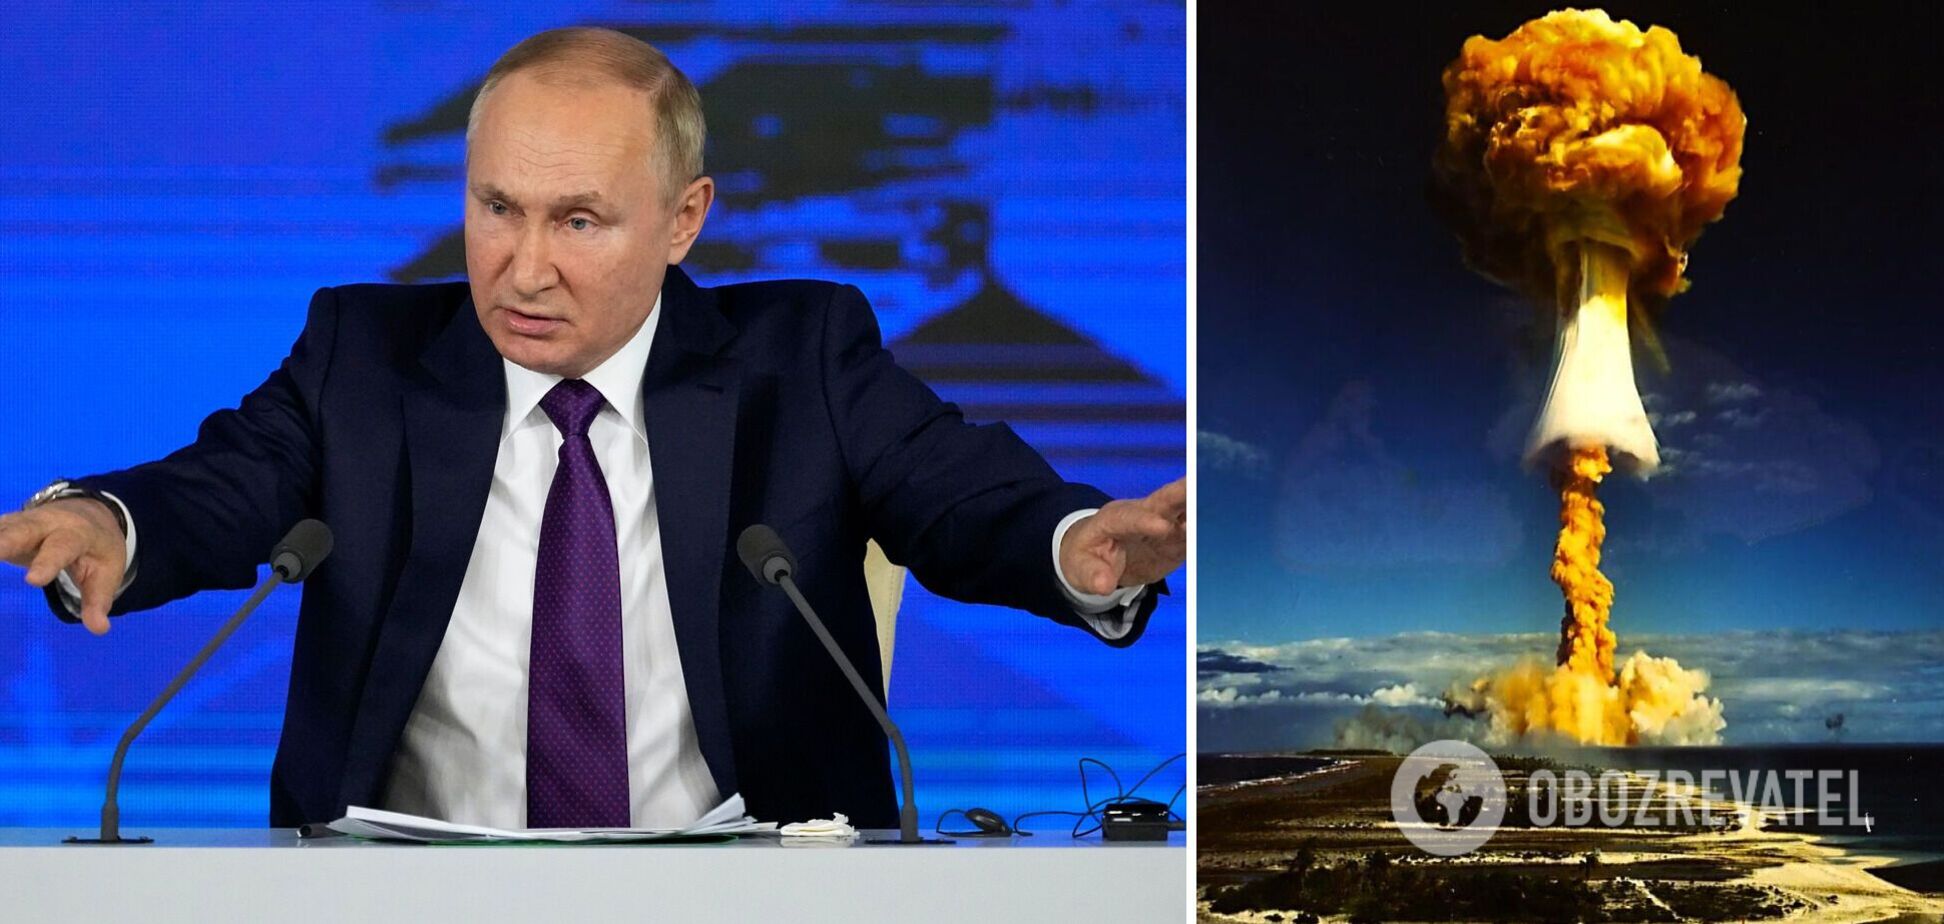 'Путіну натякнули, що його зірка заходить':  Левін пояснив, чому Путін посилив ядерний шантаж